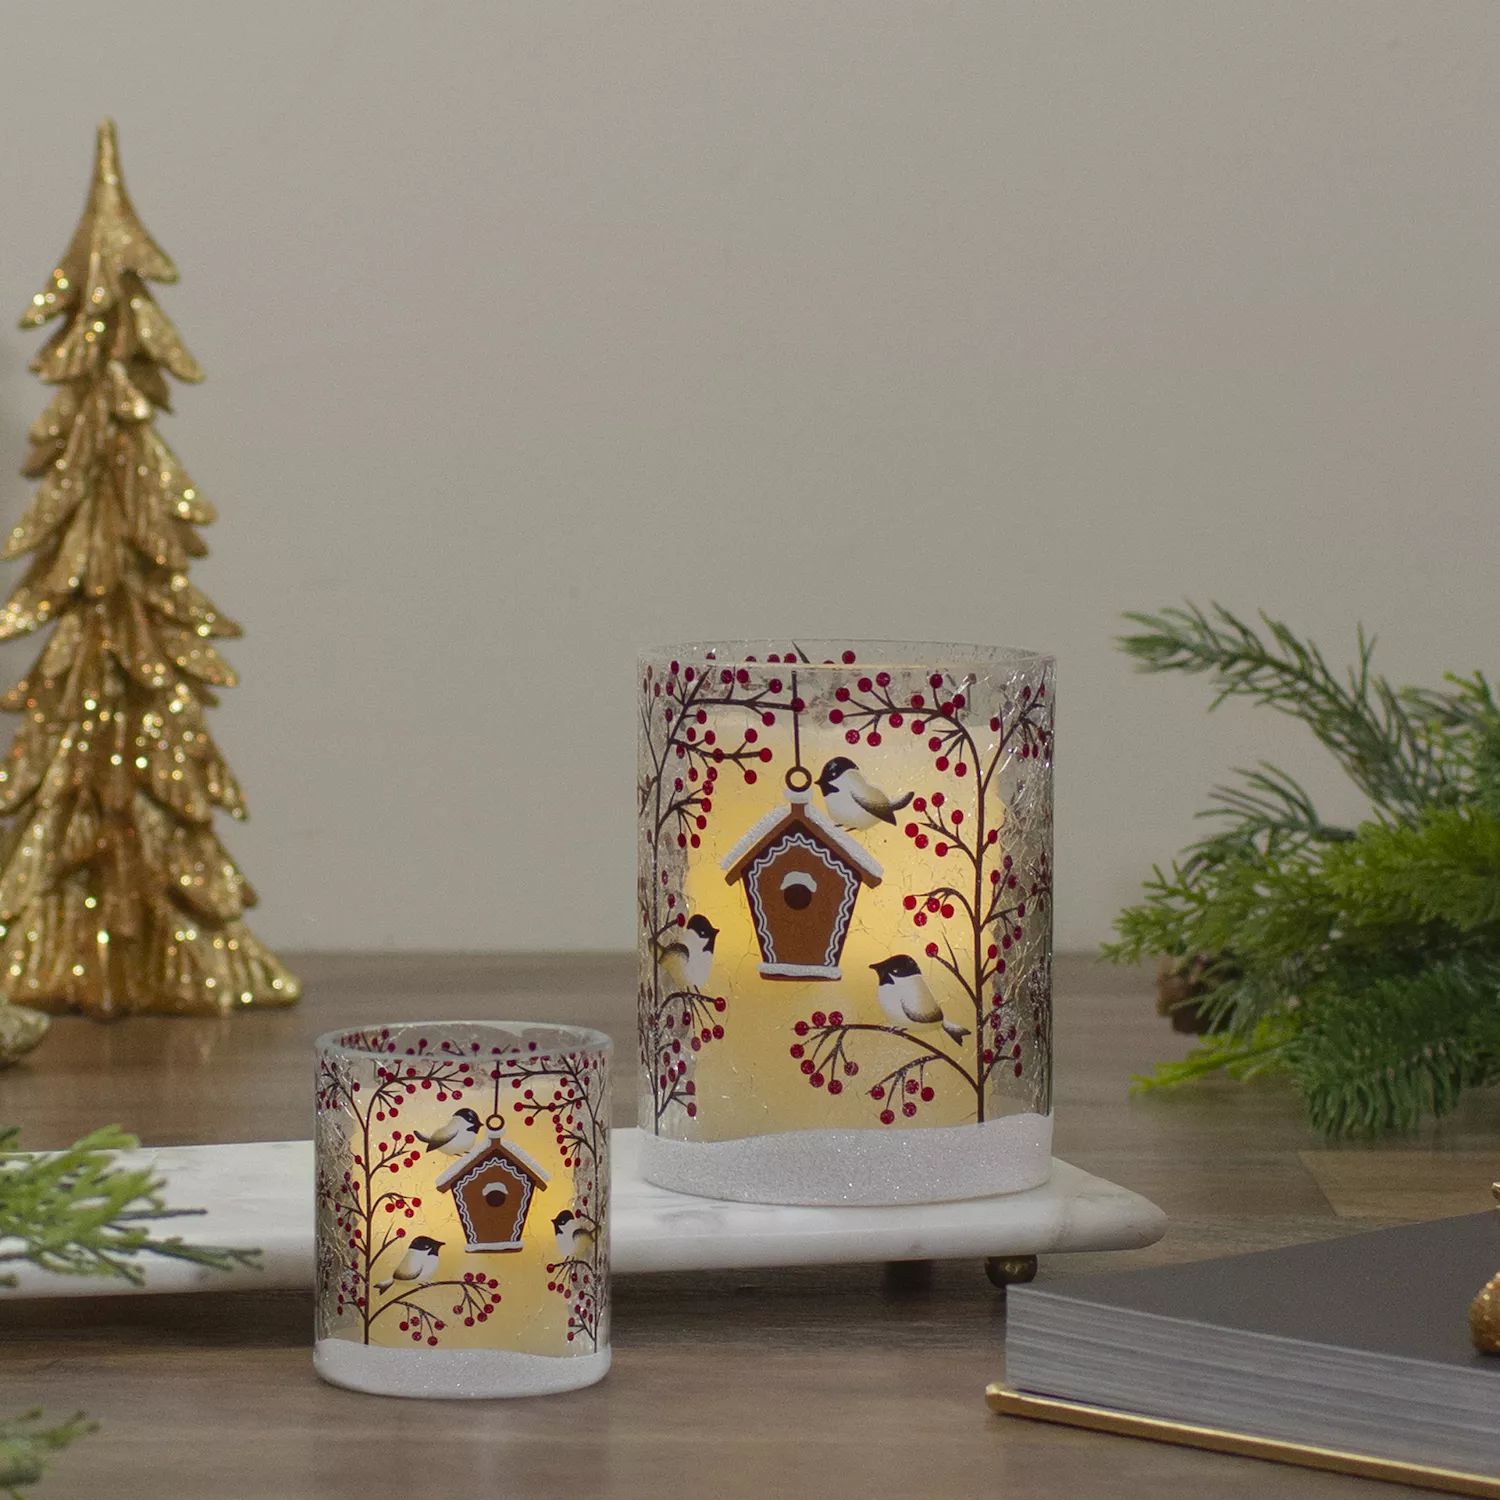 5-дюймовый беспламенный стеклянный рождественский подсвечник с воробьями и ягодами, расписанный вручную подсвечник 1 свеча золотые фантазии 18см керамика золото